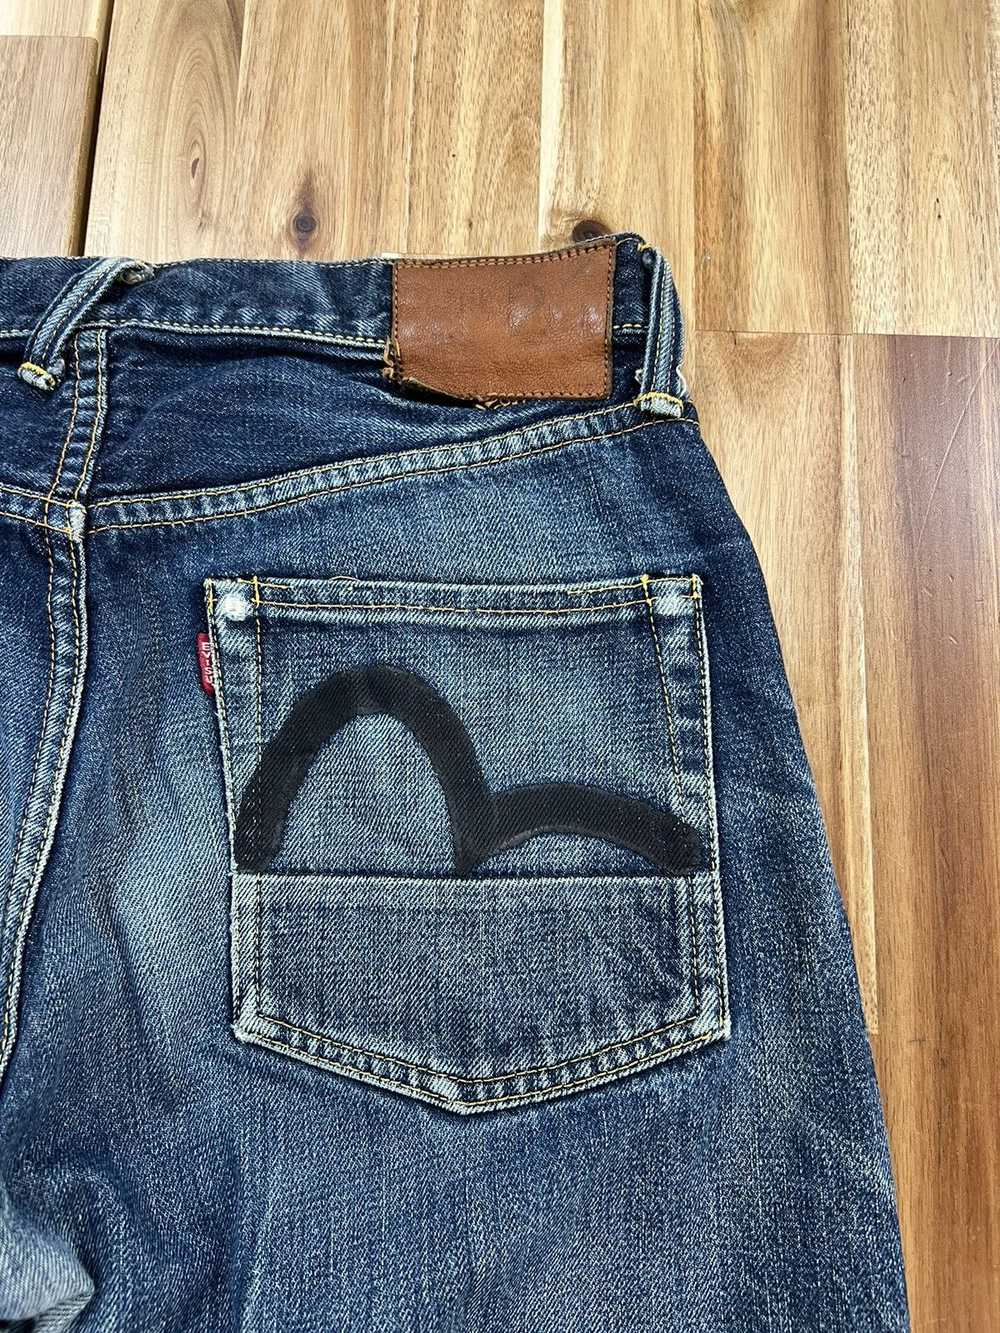 Evisu × Vintage Evisu Jeans By Yamane Daicock Sel… - image 3